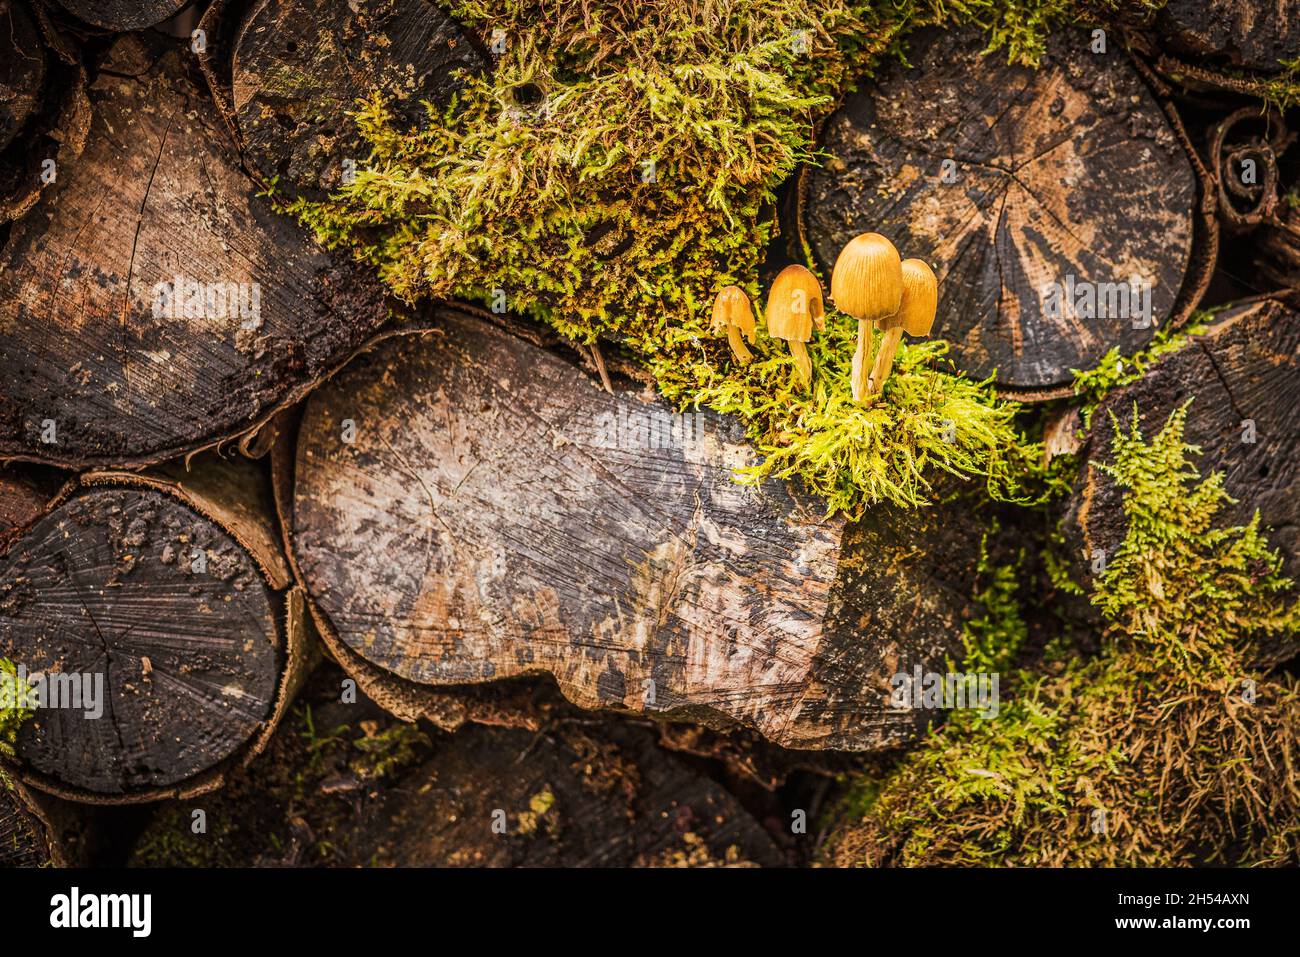 Pila de viejos troncos de árboles cortados en el bosque, sobrecultivados con musgo y champiñones Foto de stock